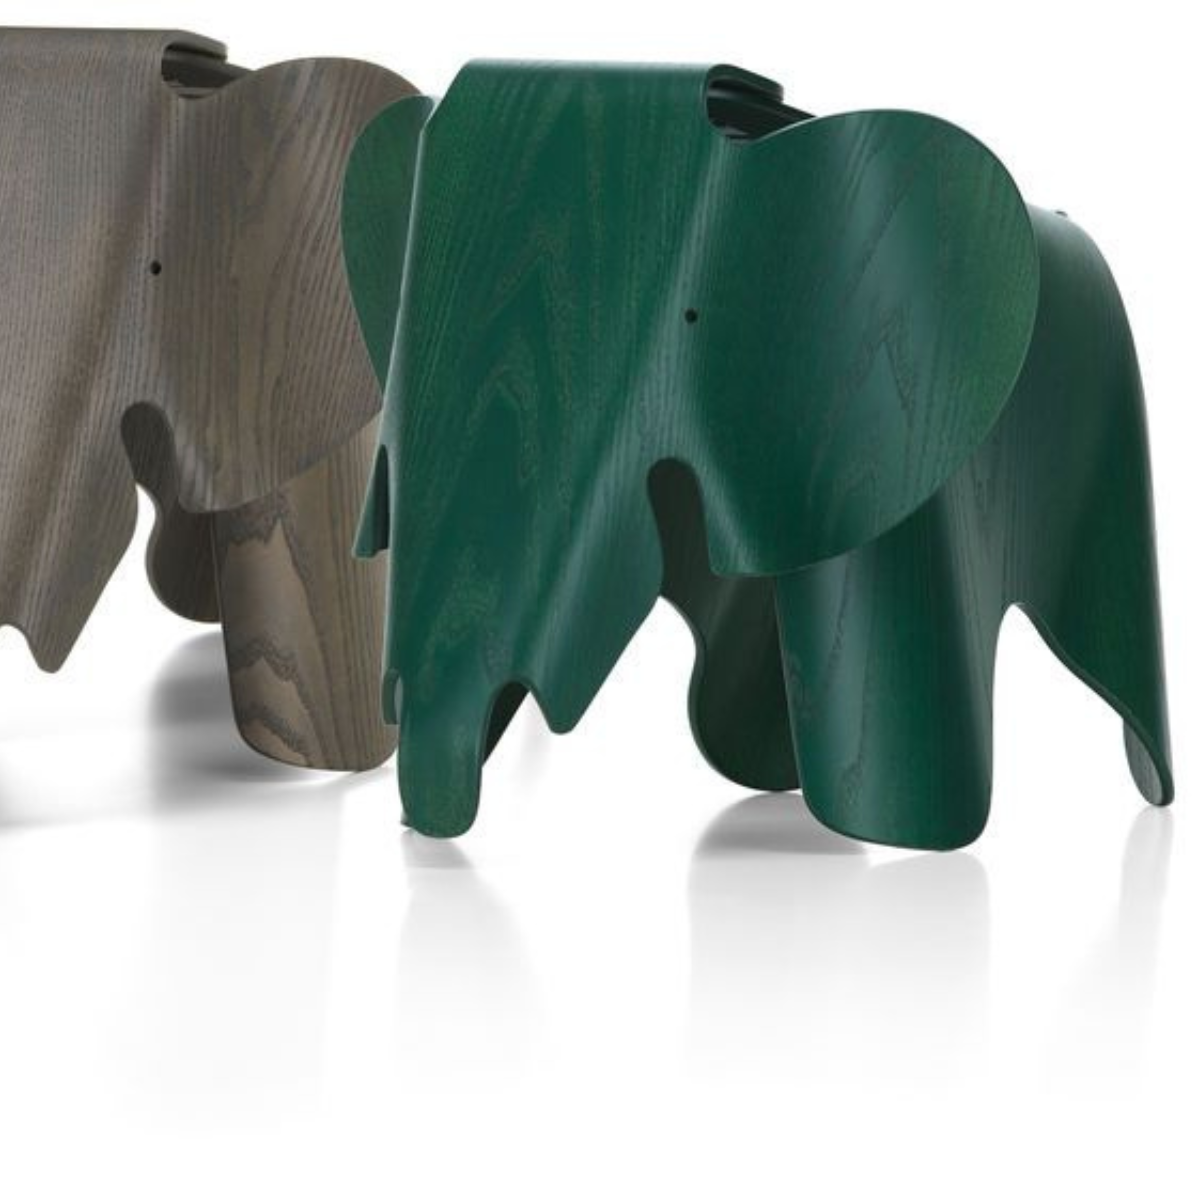 L'elephant des eames, nouvelle collection